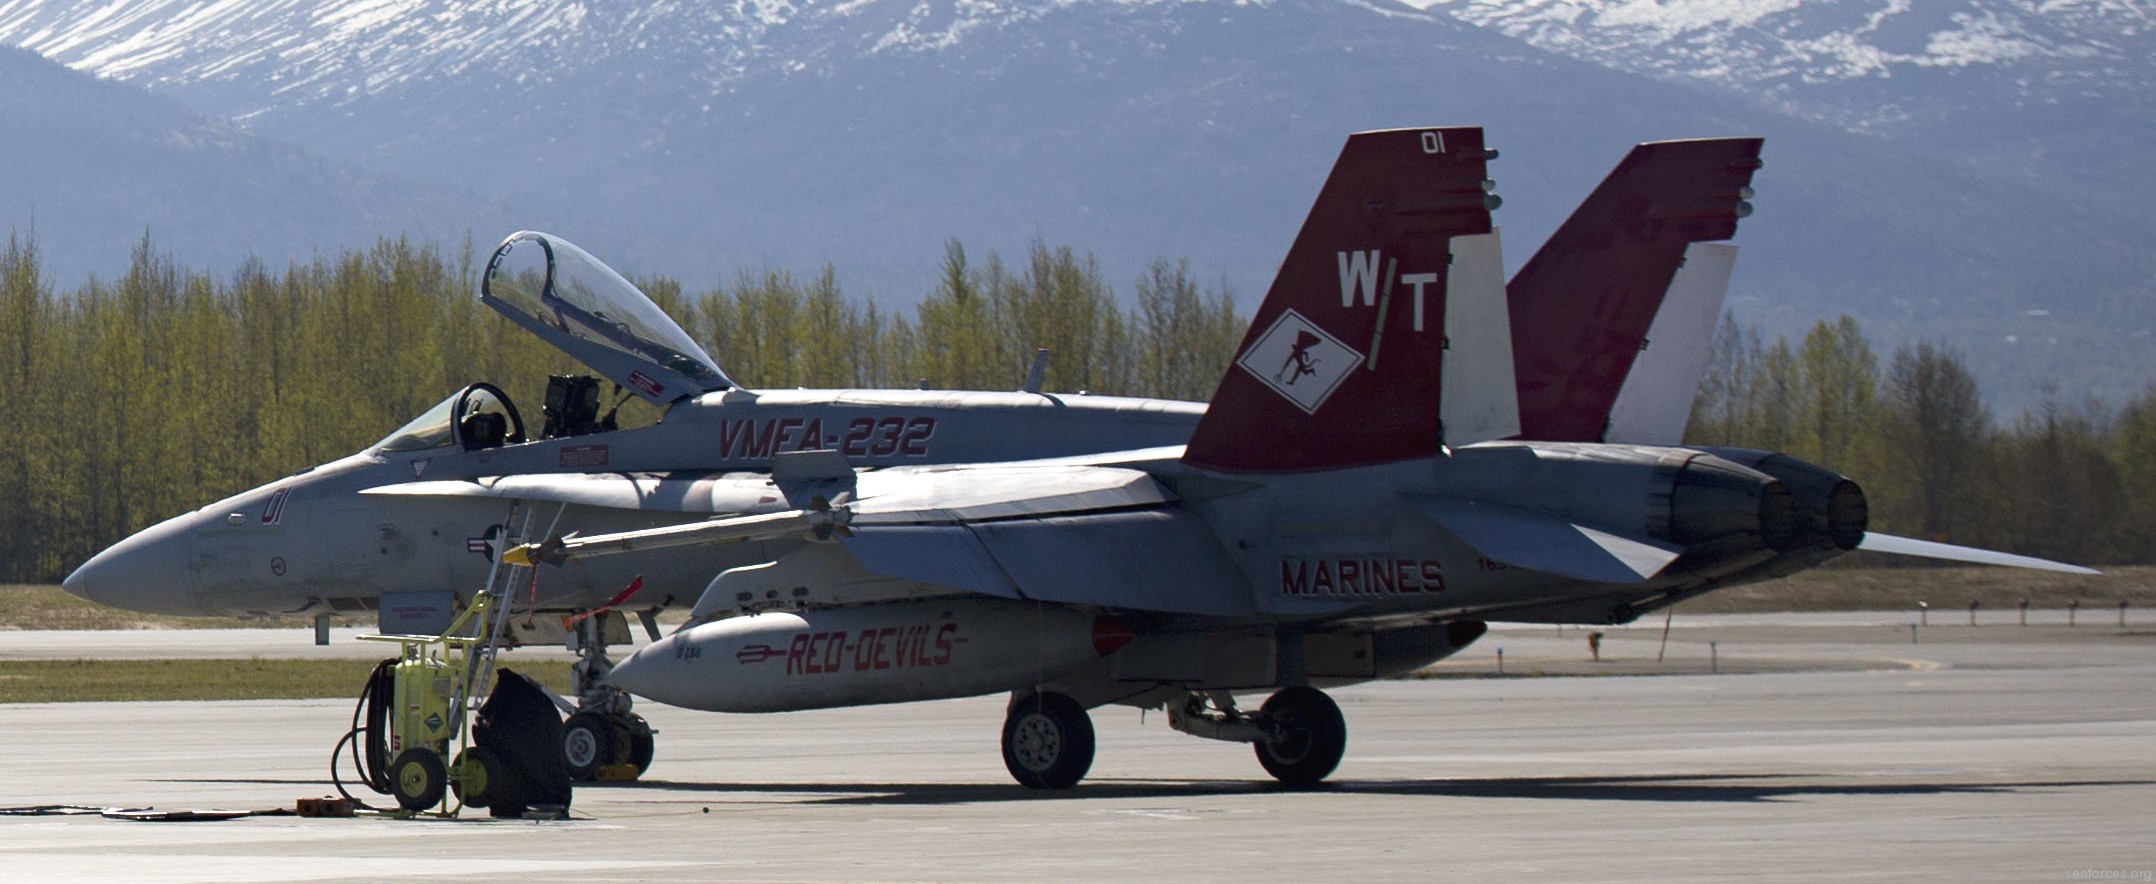 vmfa-232 red devils marine fighter attack squadron usmc f/a-18c hornet 102